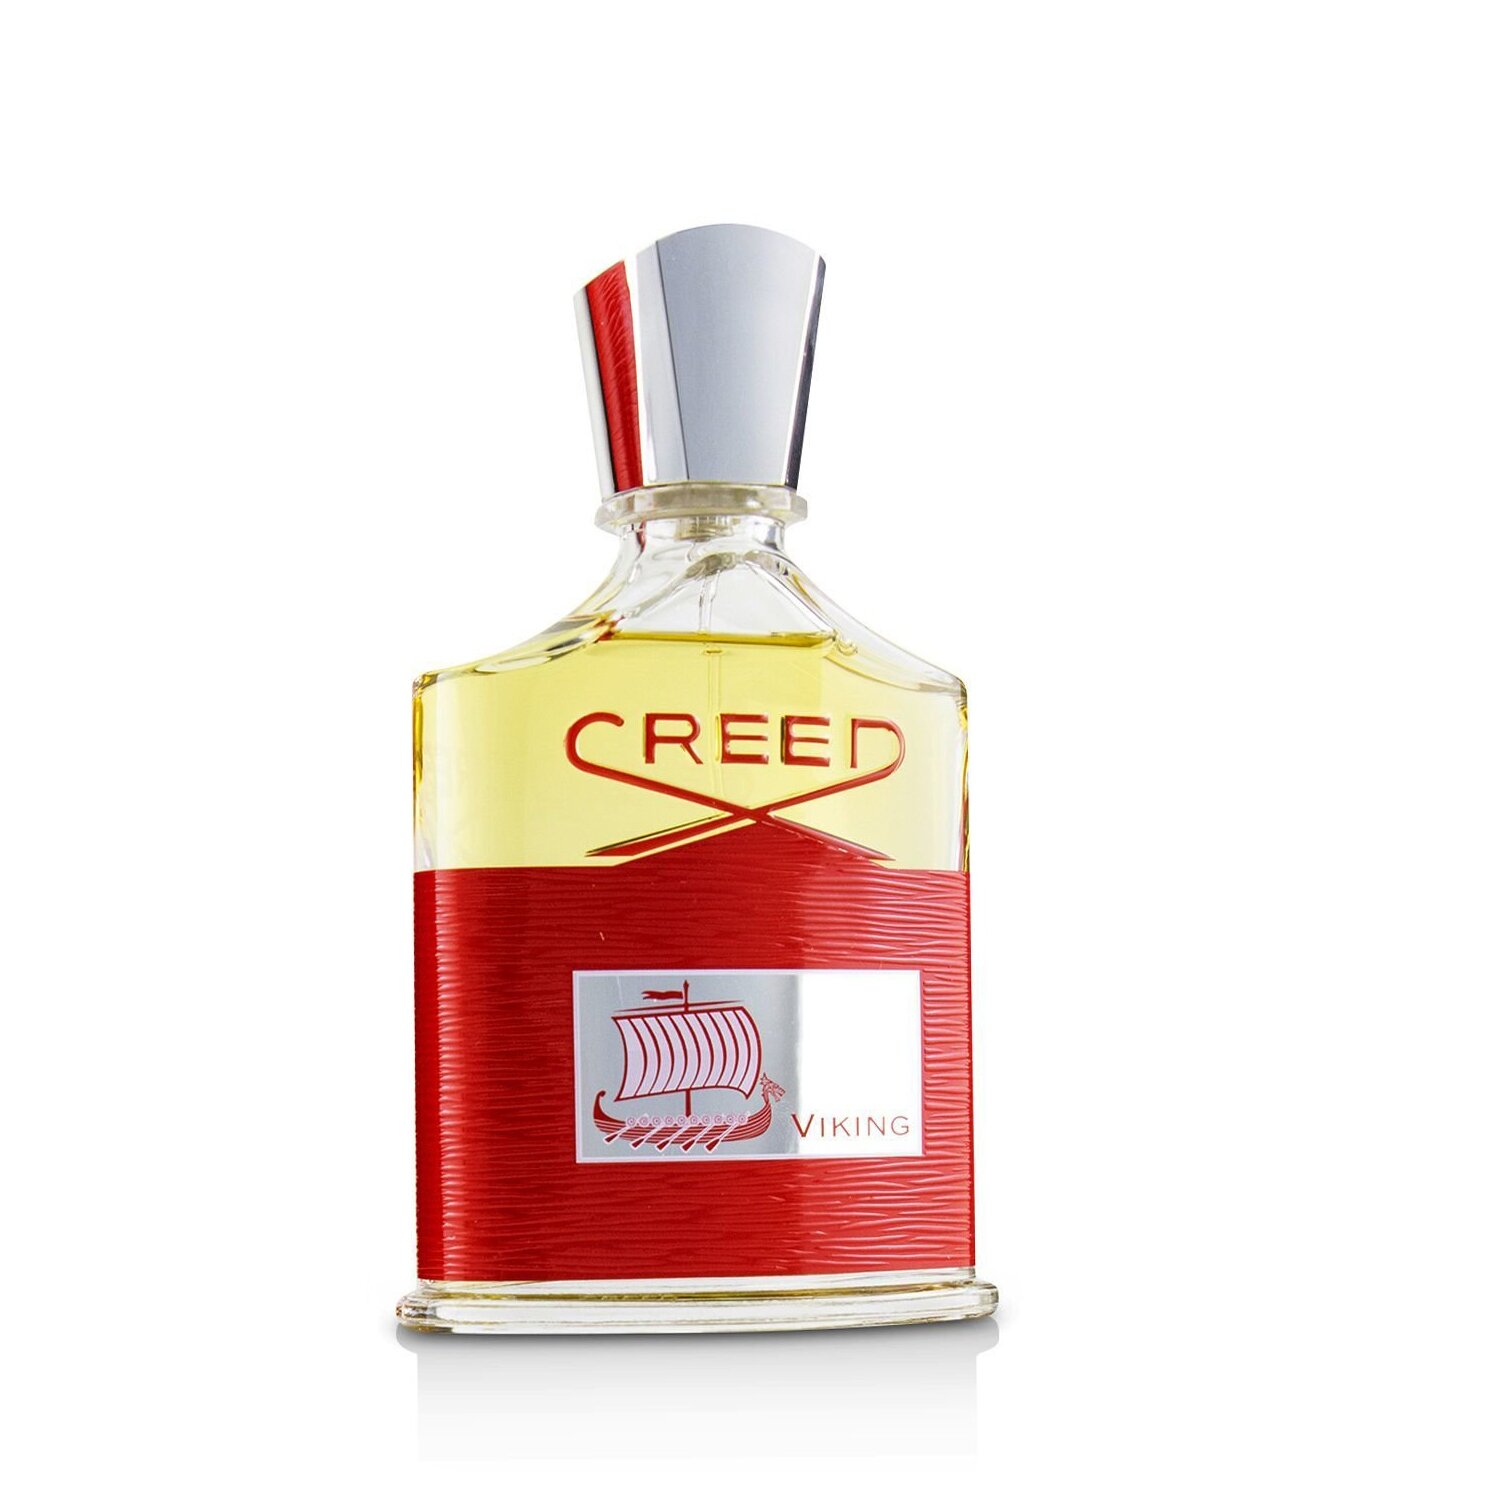 克雷德 Creed - 維京之海男性香氛 Viking Fragrance Spray